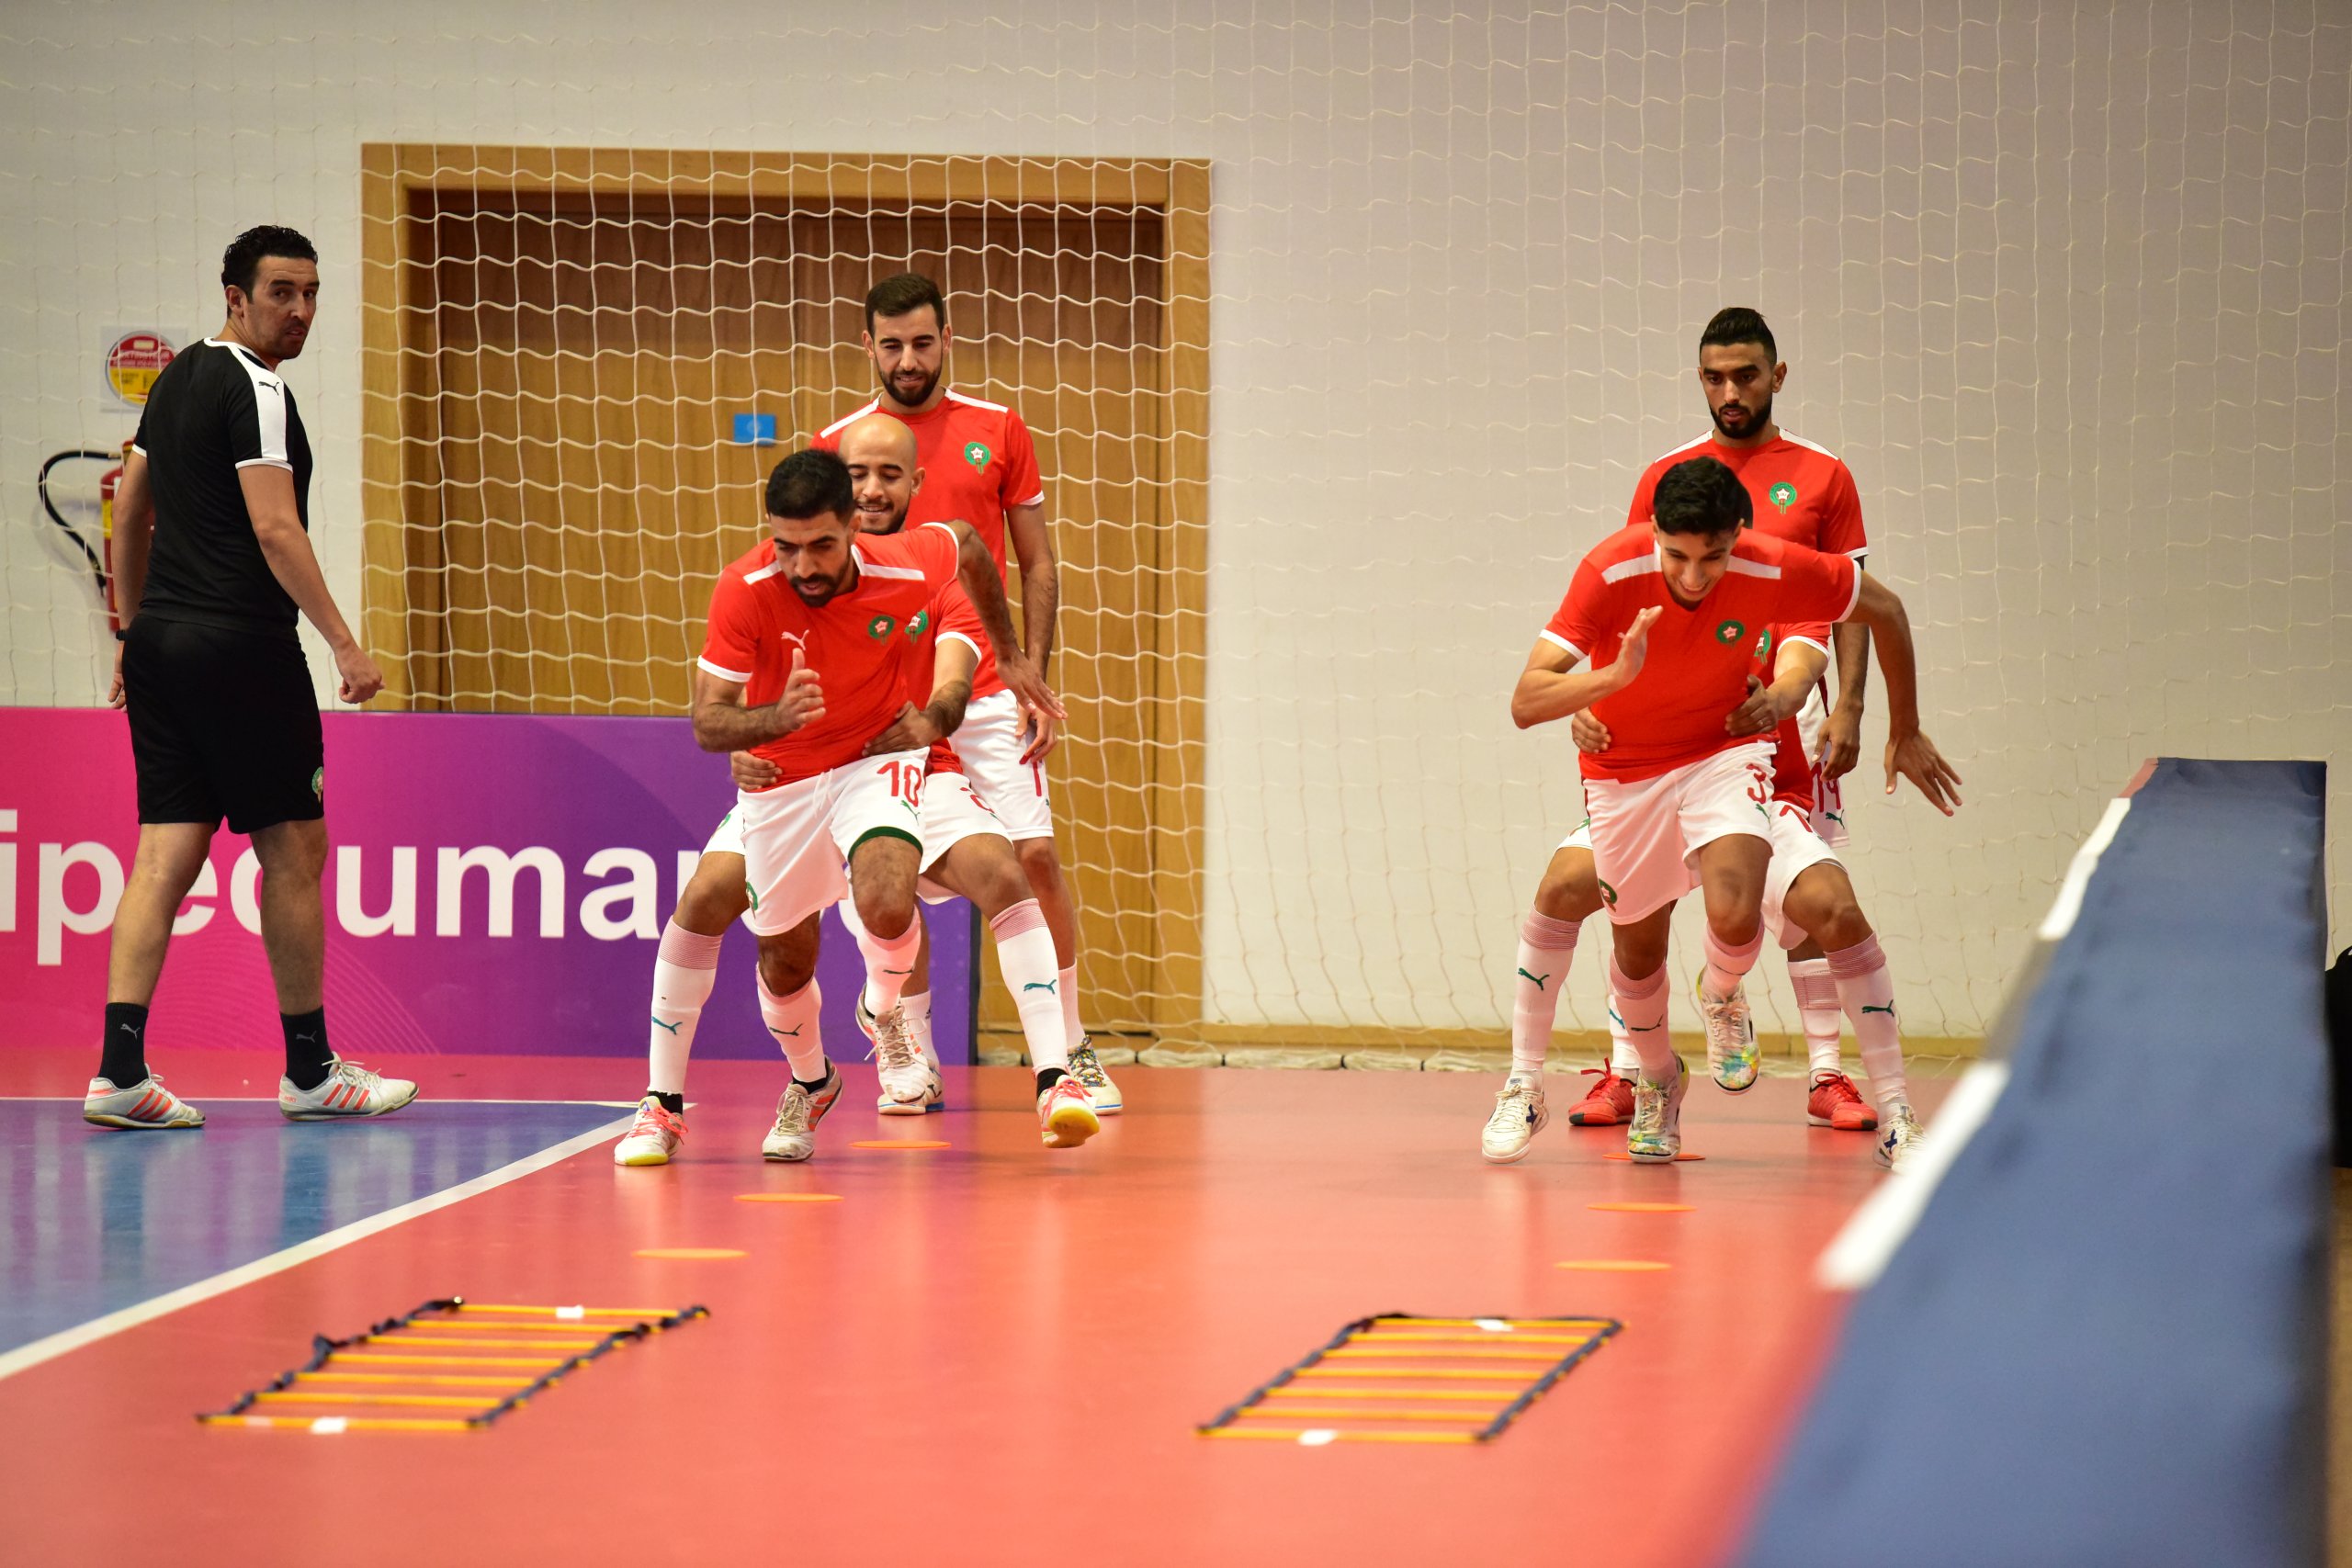 مباراة ودية : تشكيلة المنتخبين المغربي و الدانمارك لكرة القدم داخل القاعة